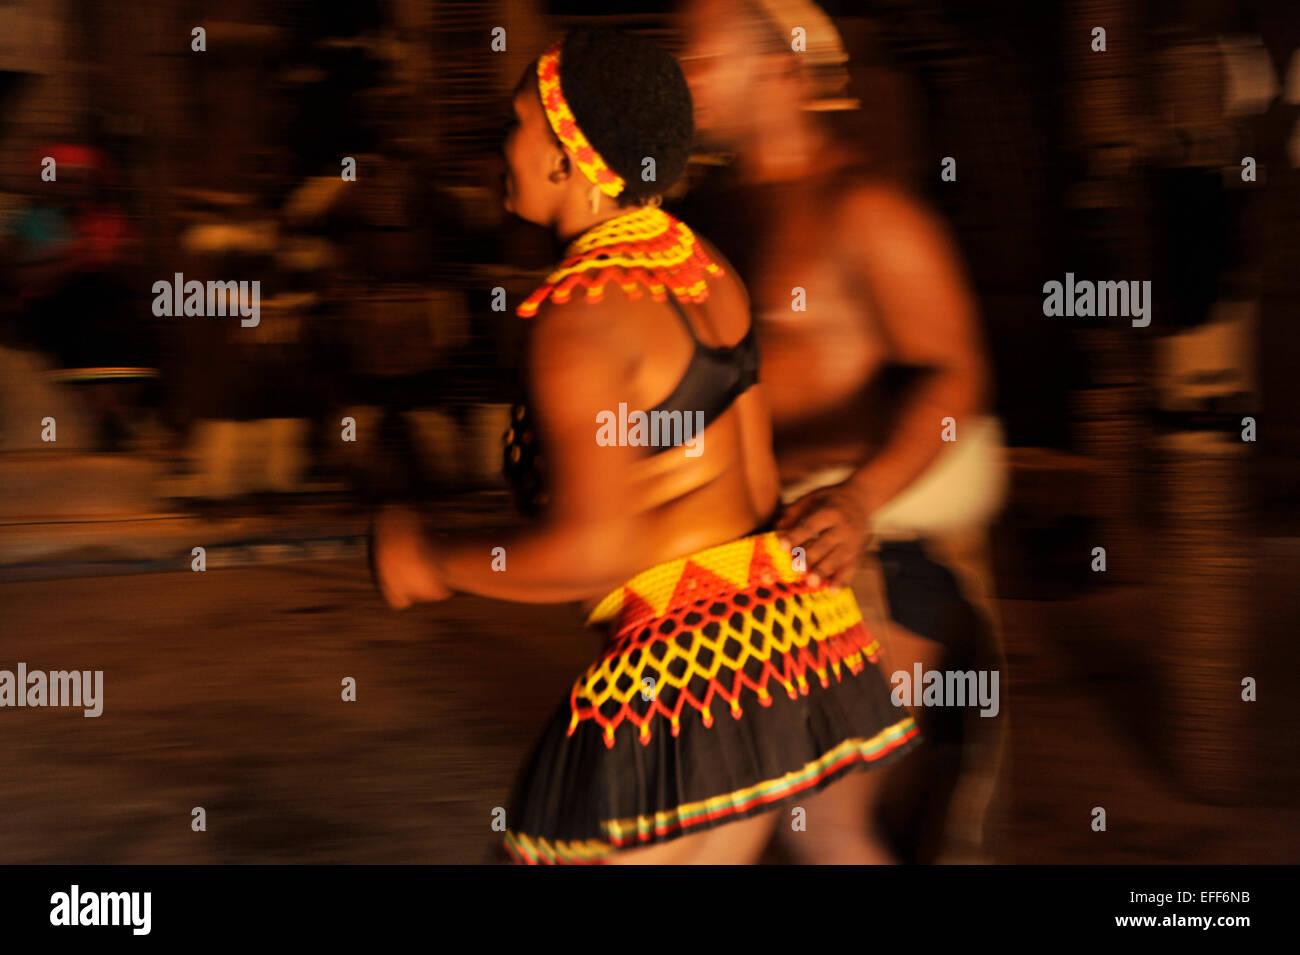 Personnes, jeune femme danseuse, culture, robe à perles colorées, avec interprète masculin, Danse traditionnelle, village à thème Shakaland, Afrique du Sud, mouvement Banque D'Images